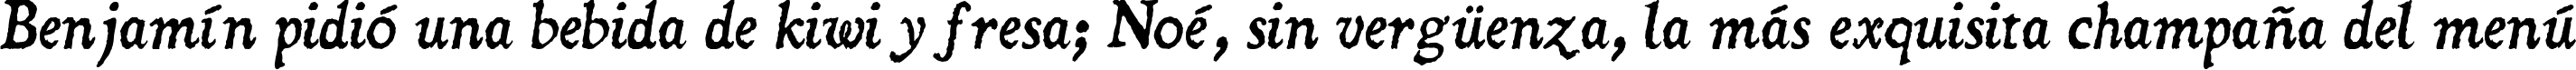 Пример написания шрифтом Dominican  Italic текста на испанском